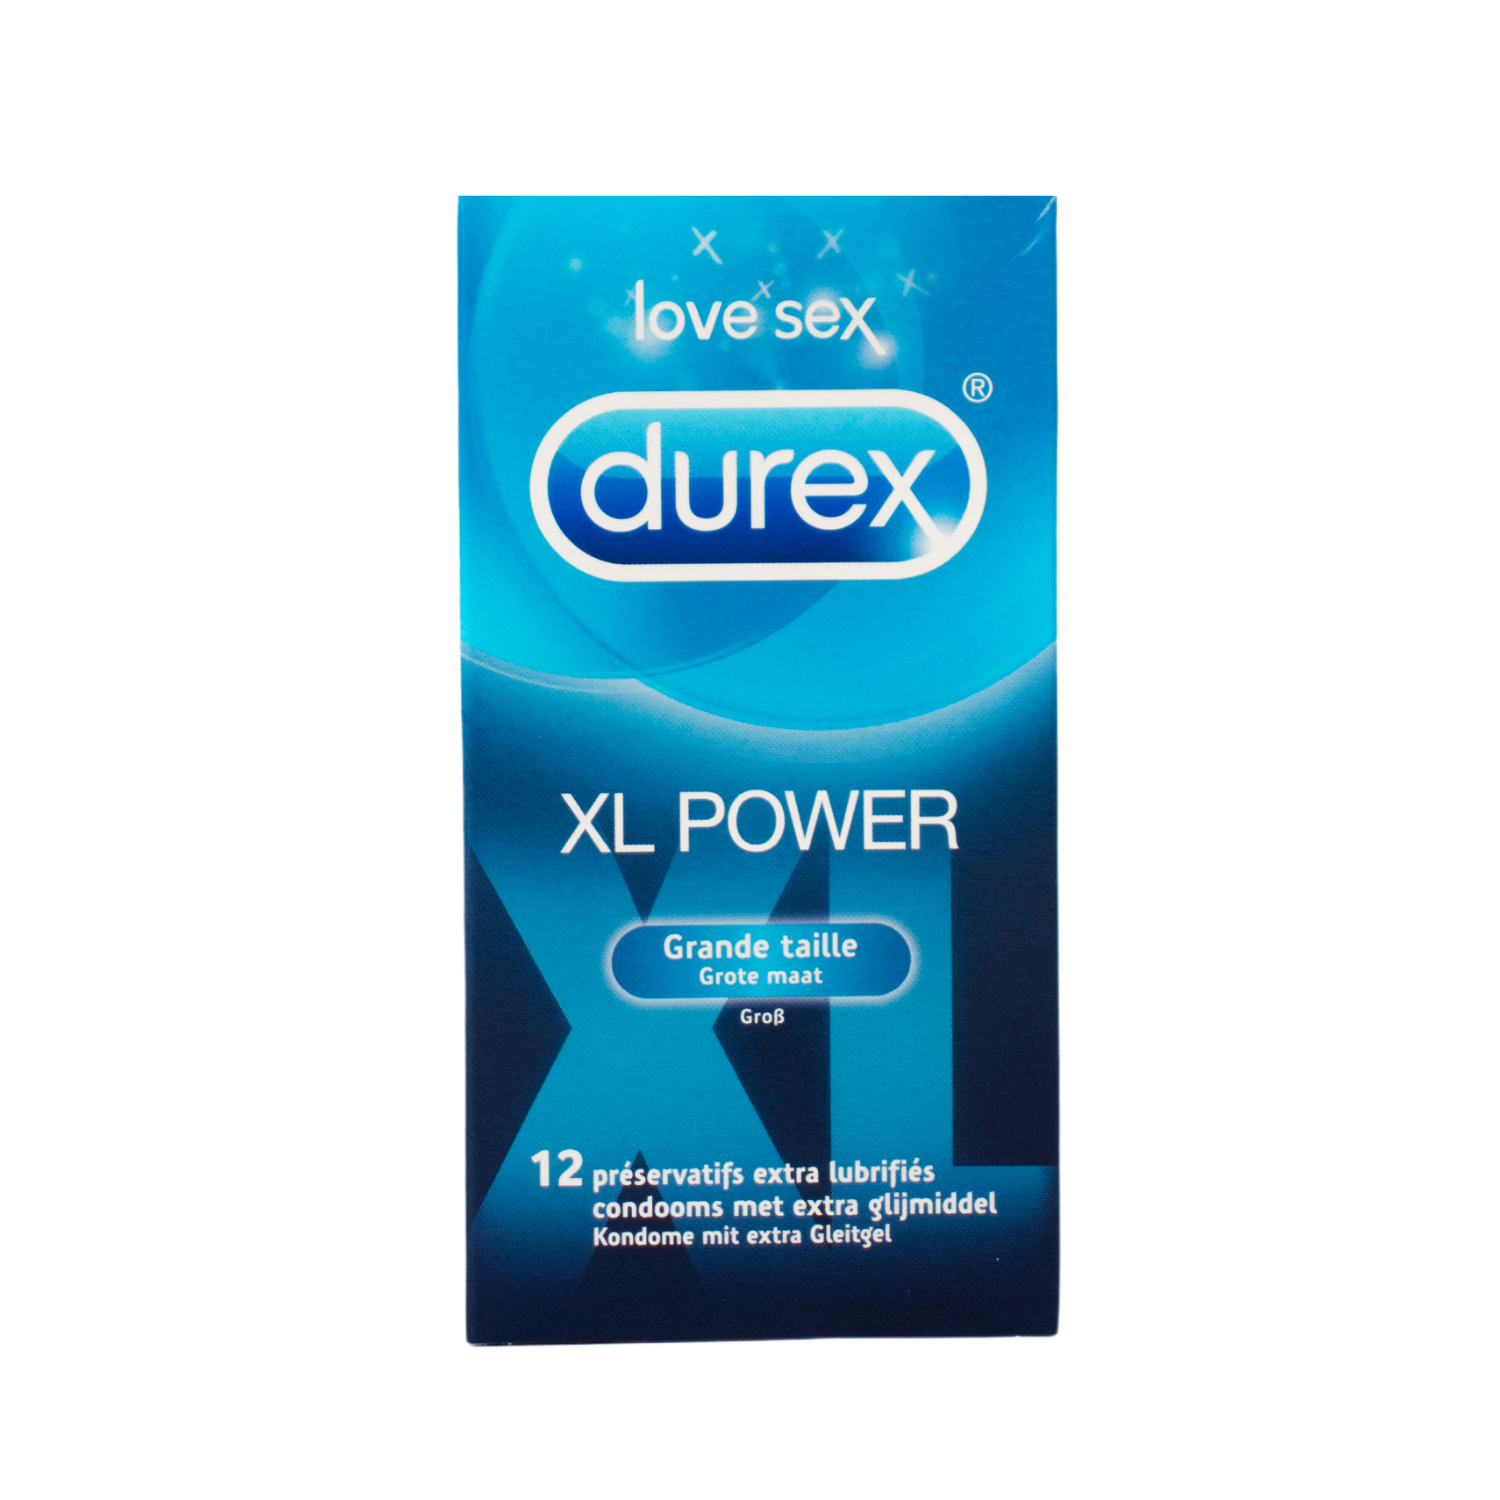 Preservativos Durex XL Power – Flavourez